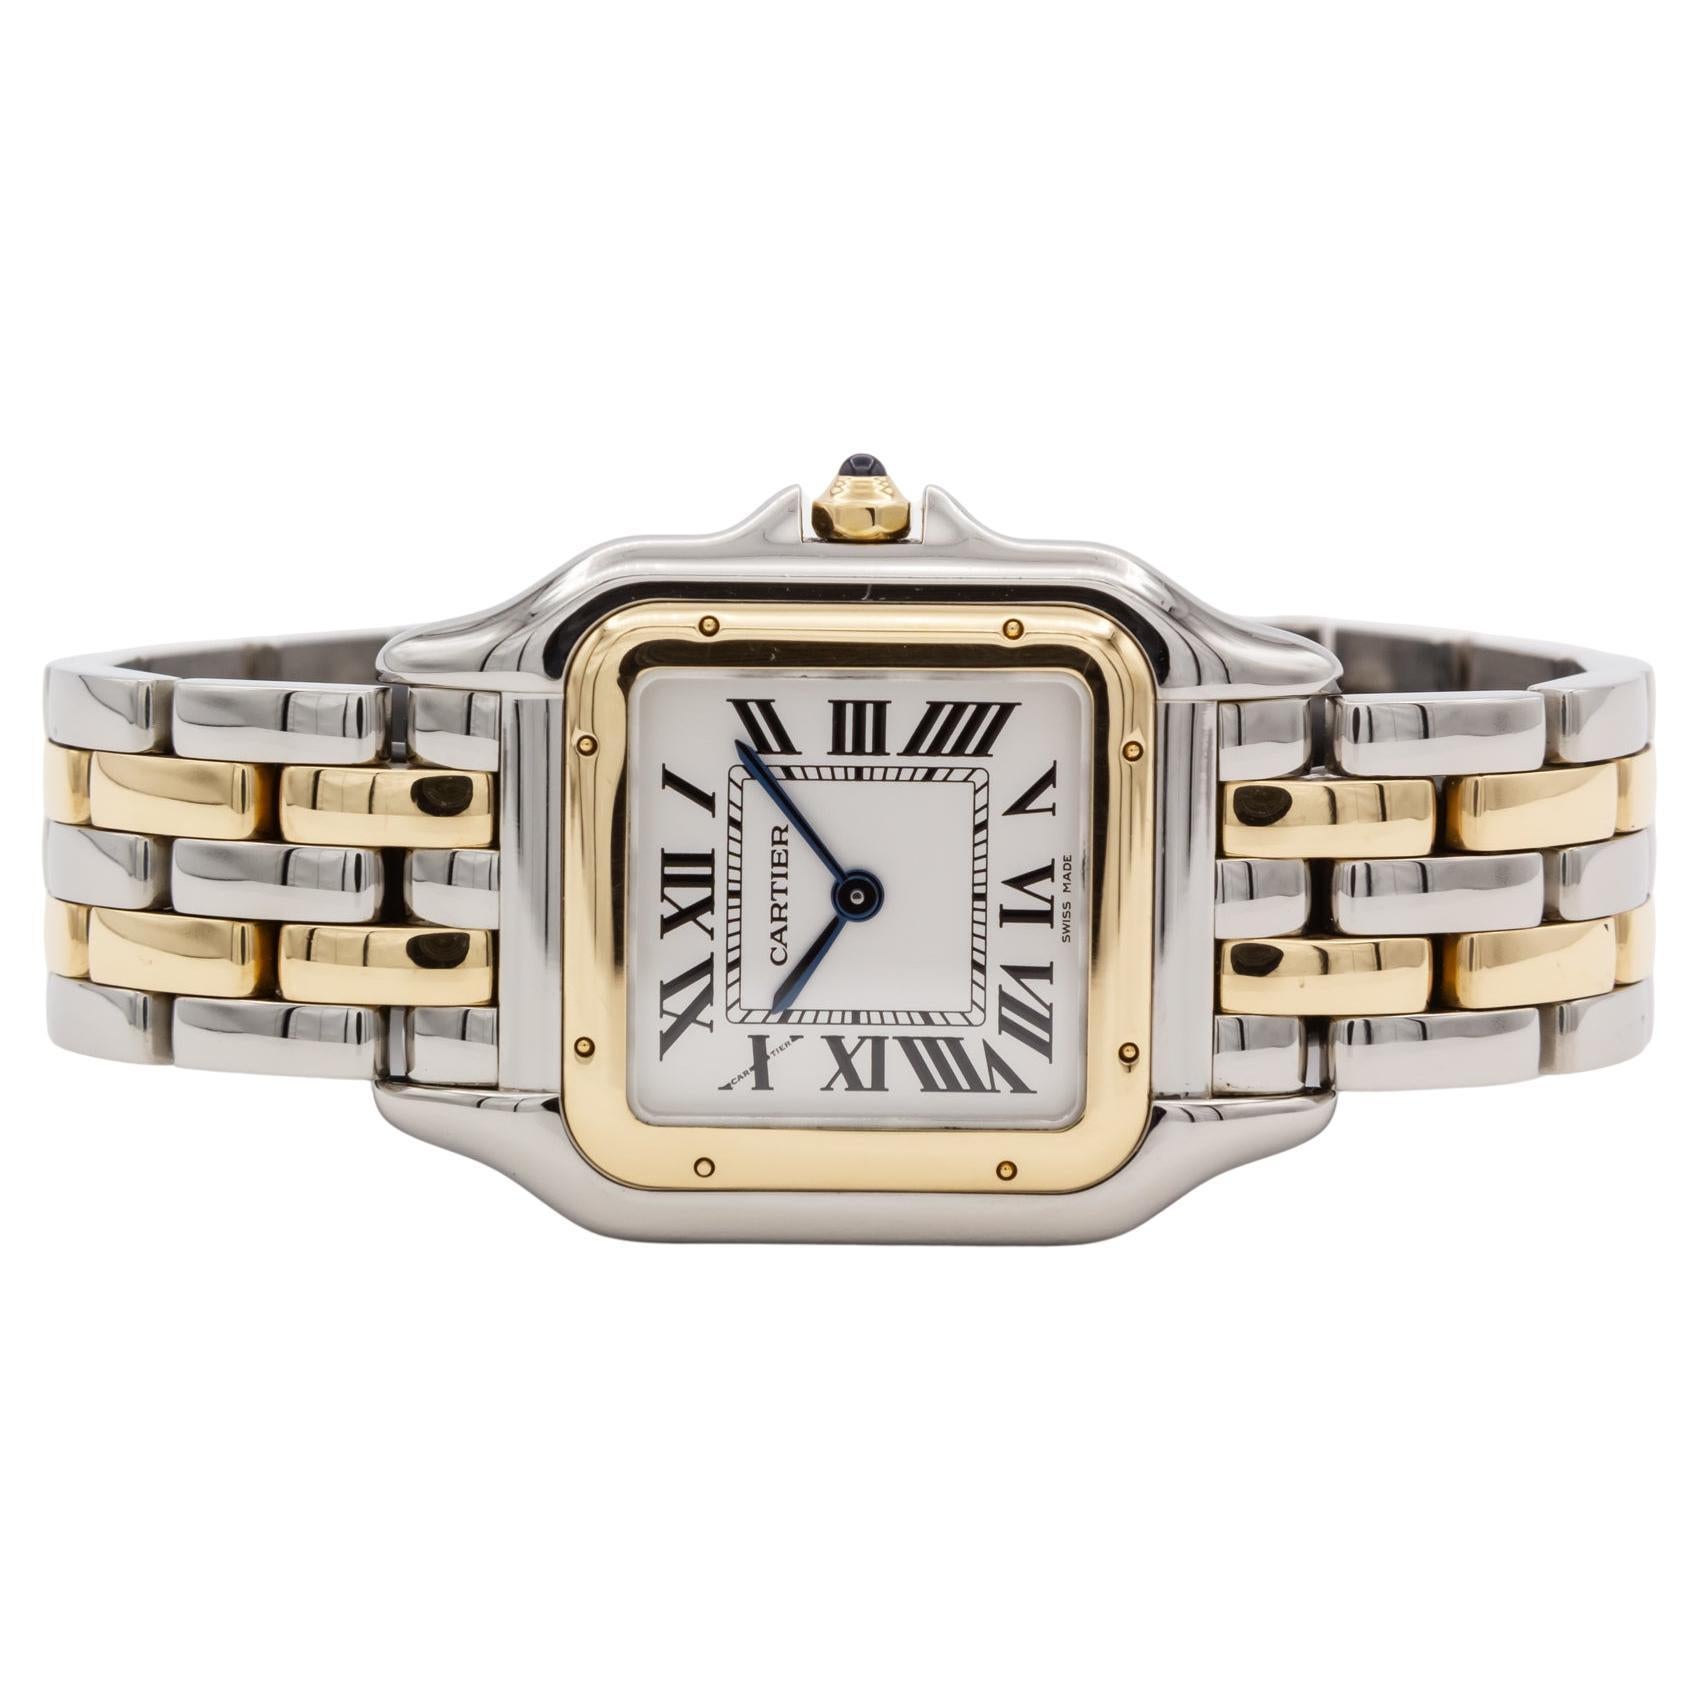 Cartier Panthere De Cartier Medium 18K Yellow Gold & Steel Quartz Watch 4017 For Sale